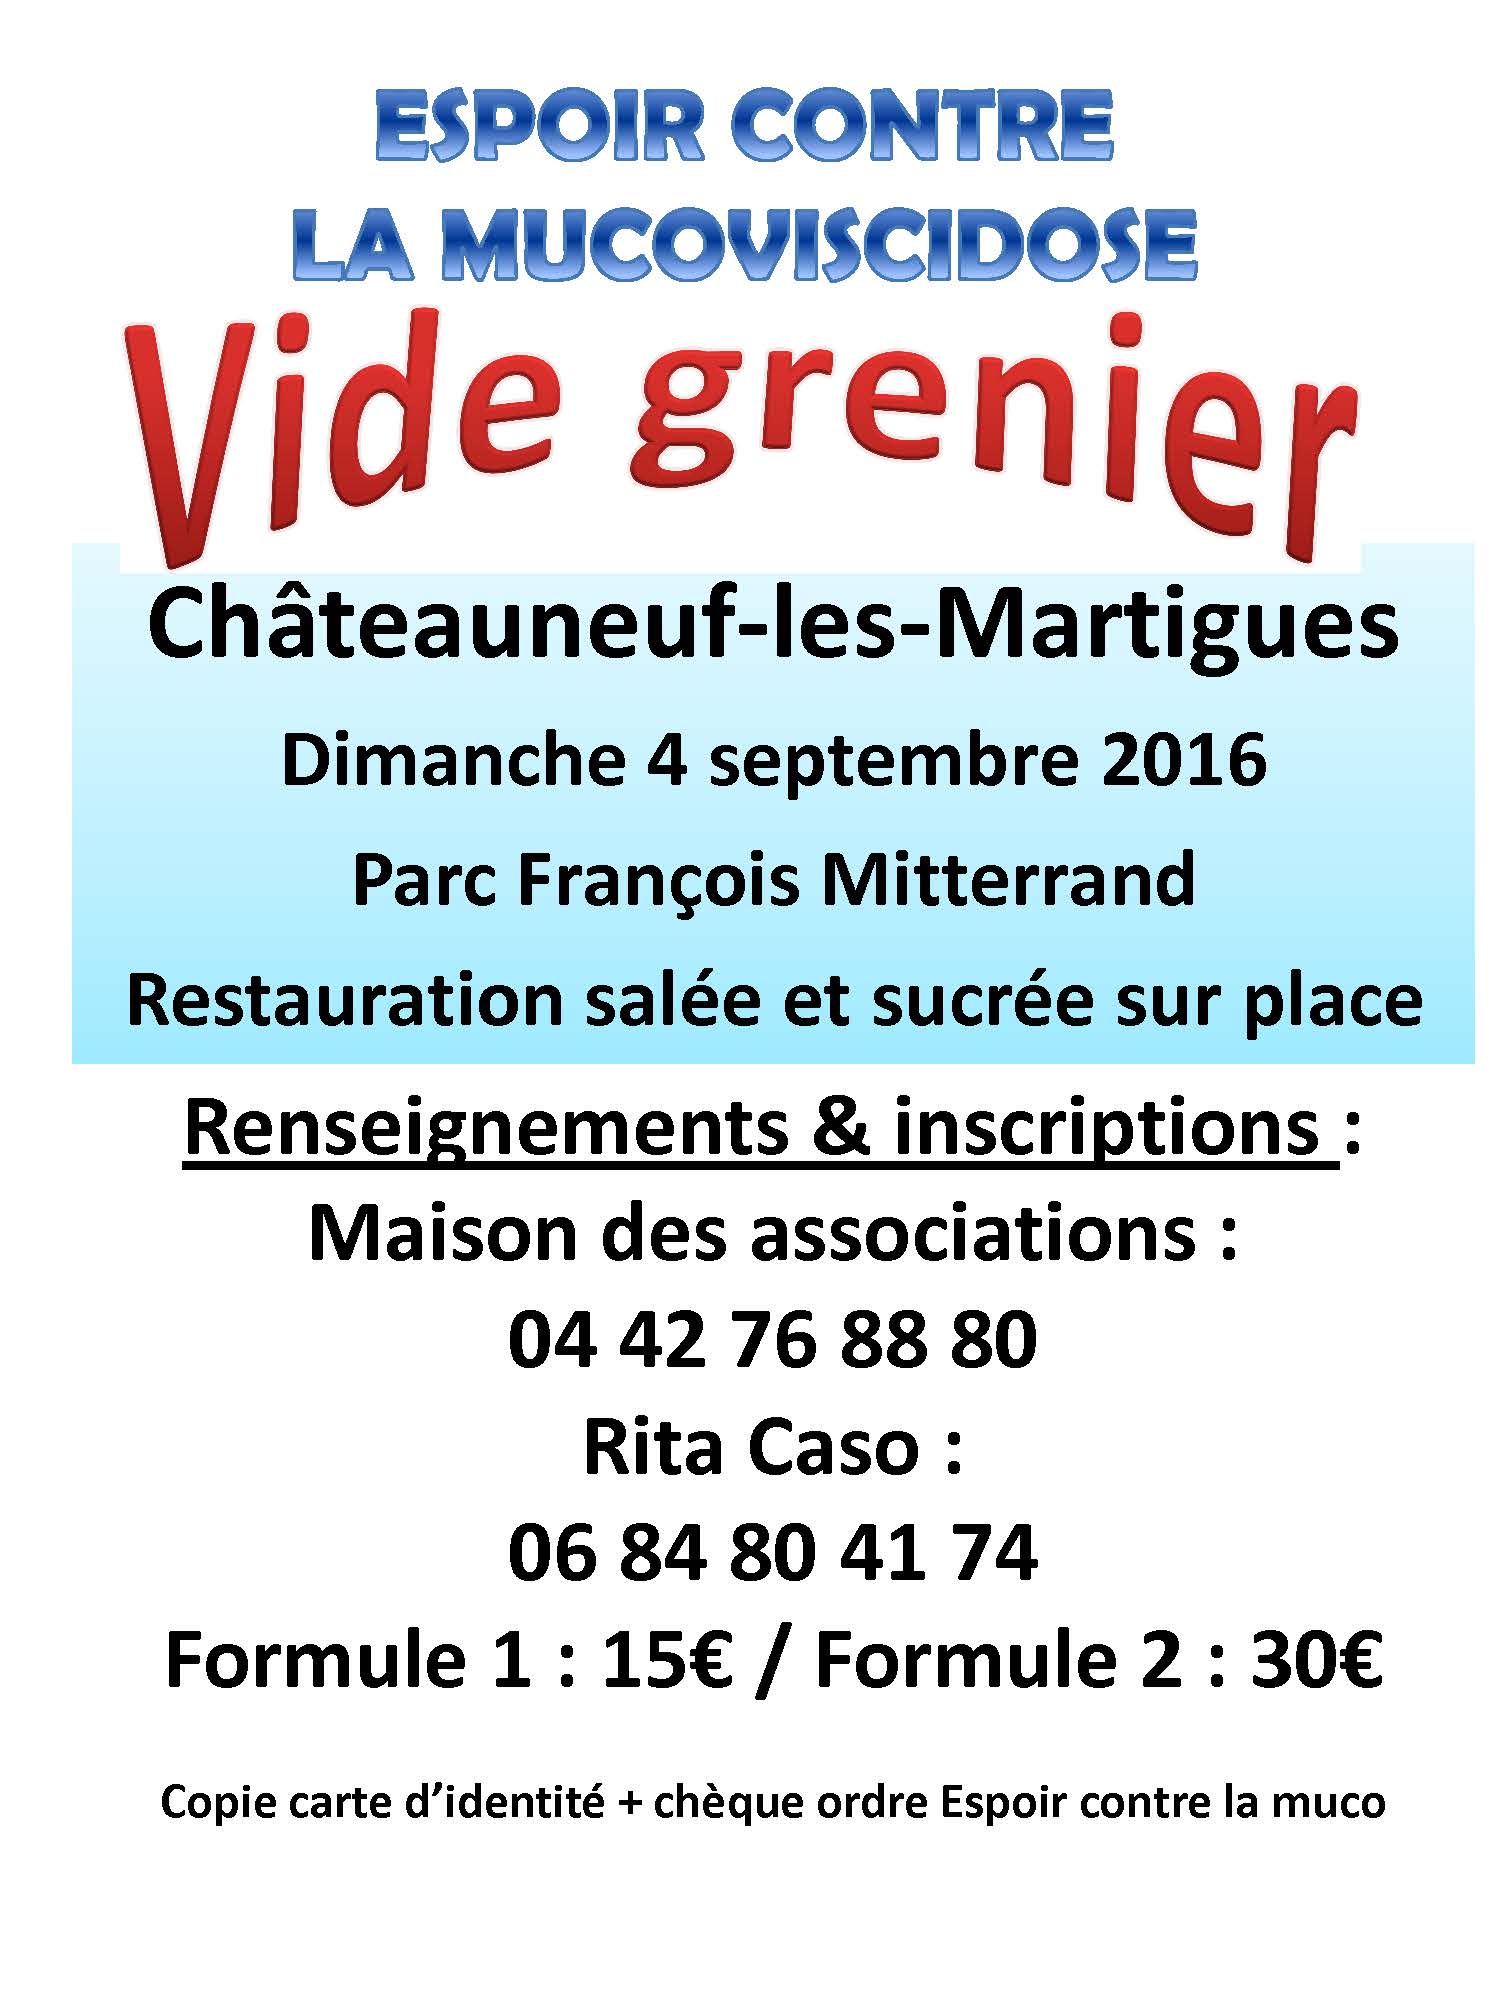 Vide grenier - 4 septembre à Châteauneuf-les-Martigues